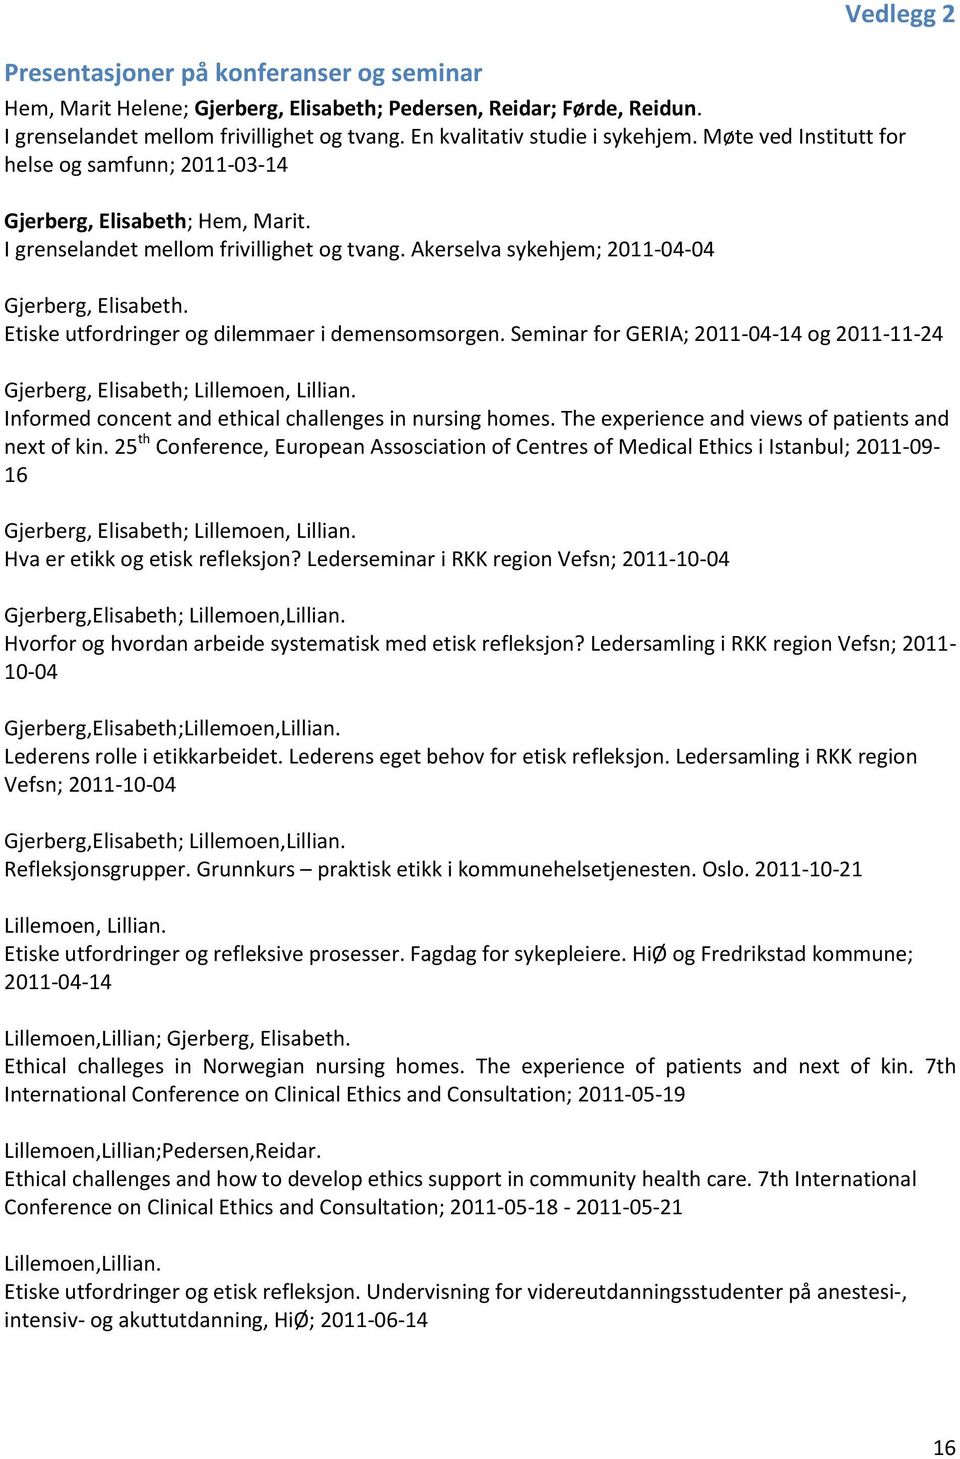 Akerselva sykehjem; 2011-04-04 Gjerberg, Elisabeth. Etiske utfordringer og dilemmaer i demensomsorgen. Seminar for GERIA; 2011-04-14 og 2011-11-24 Gjerberg, Elisabeth; Lillemoen, Lillian.